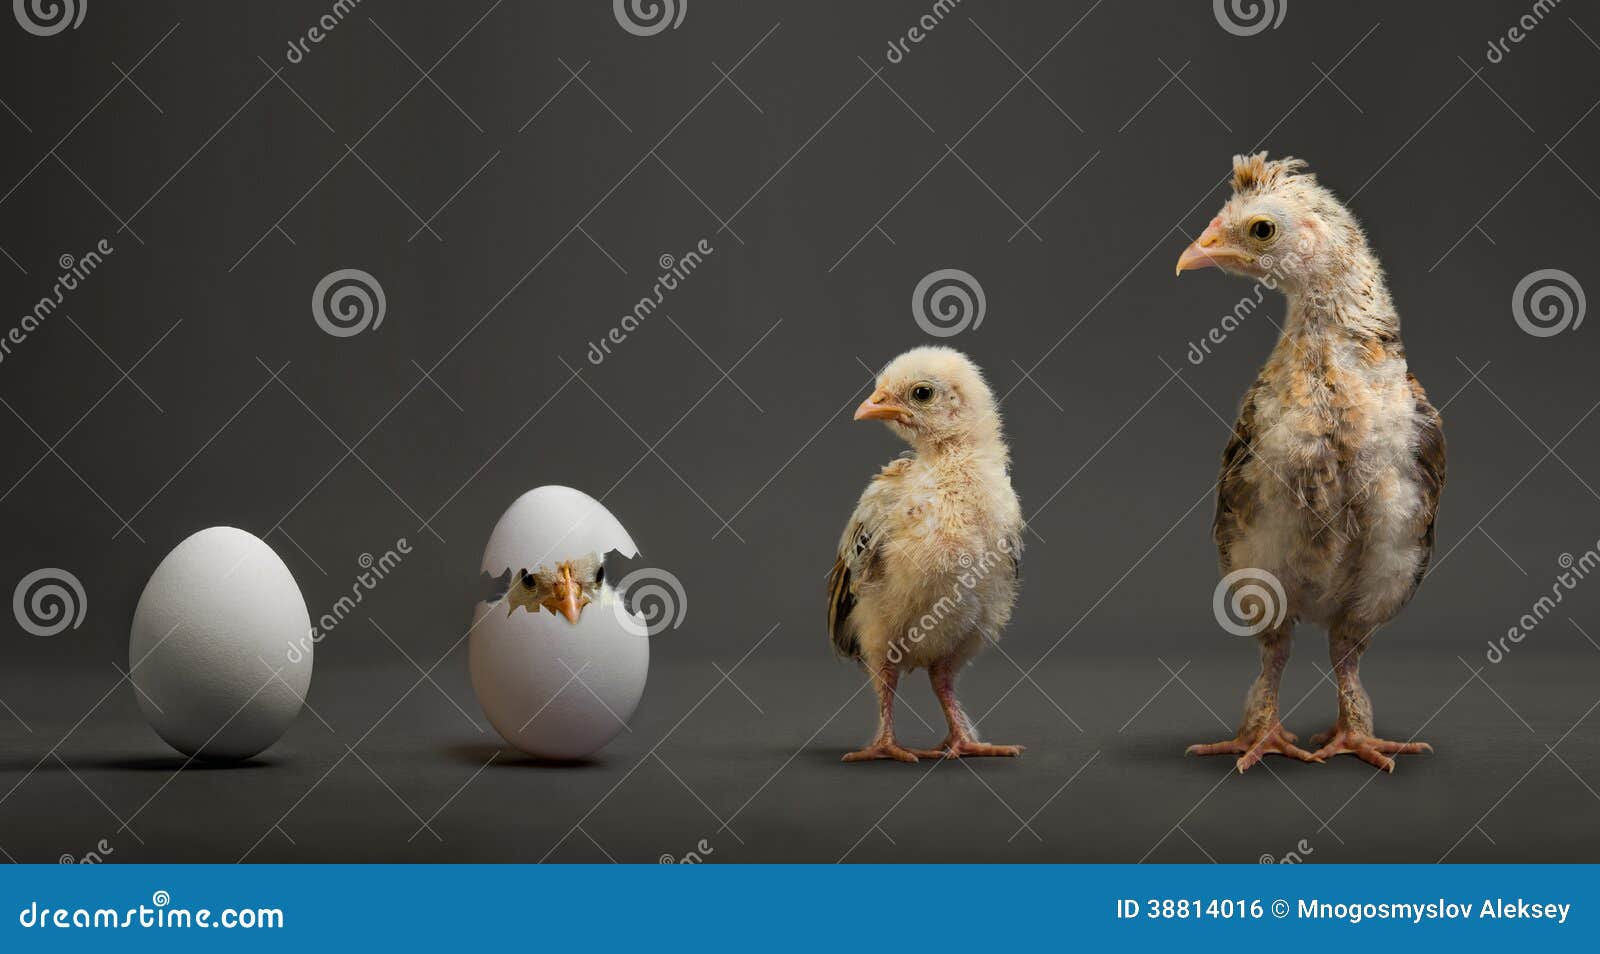 从鸡蛋到小鸡的孵化全过程，生命的延续_哔哩哔哩_bilibili